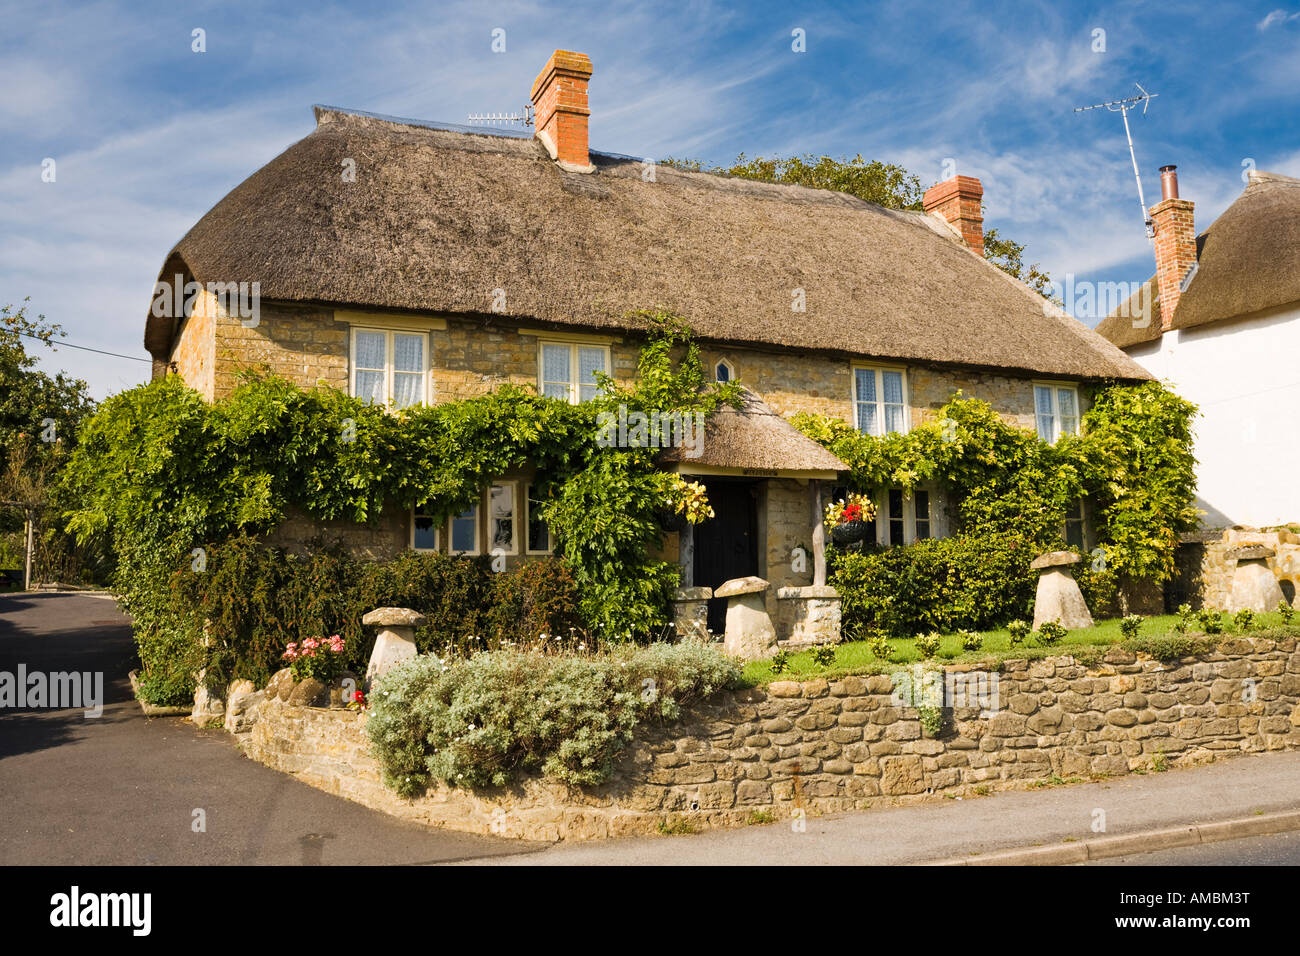 Chaumière au village de Chideock, Dorset, UK - Thatched cottage house, Angleterre Banque D'Images